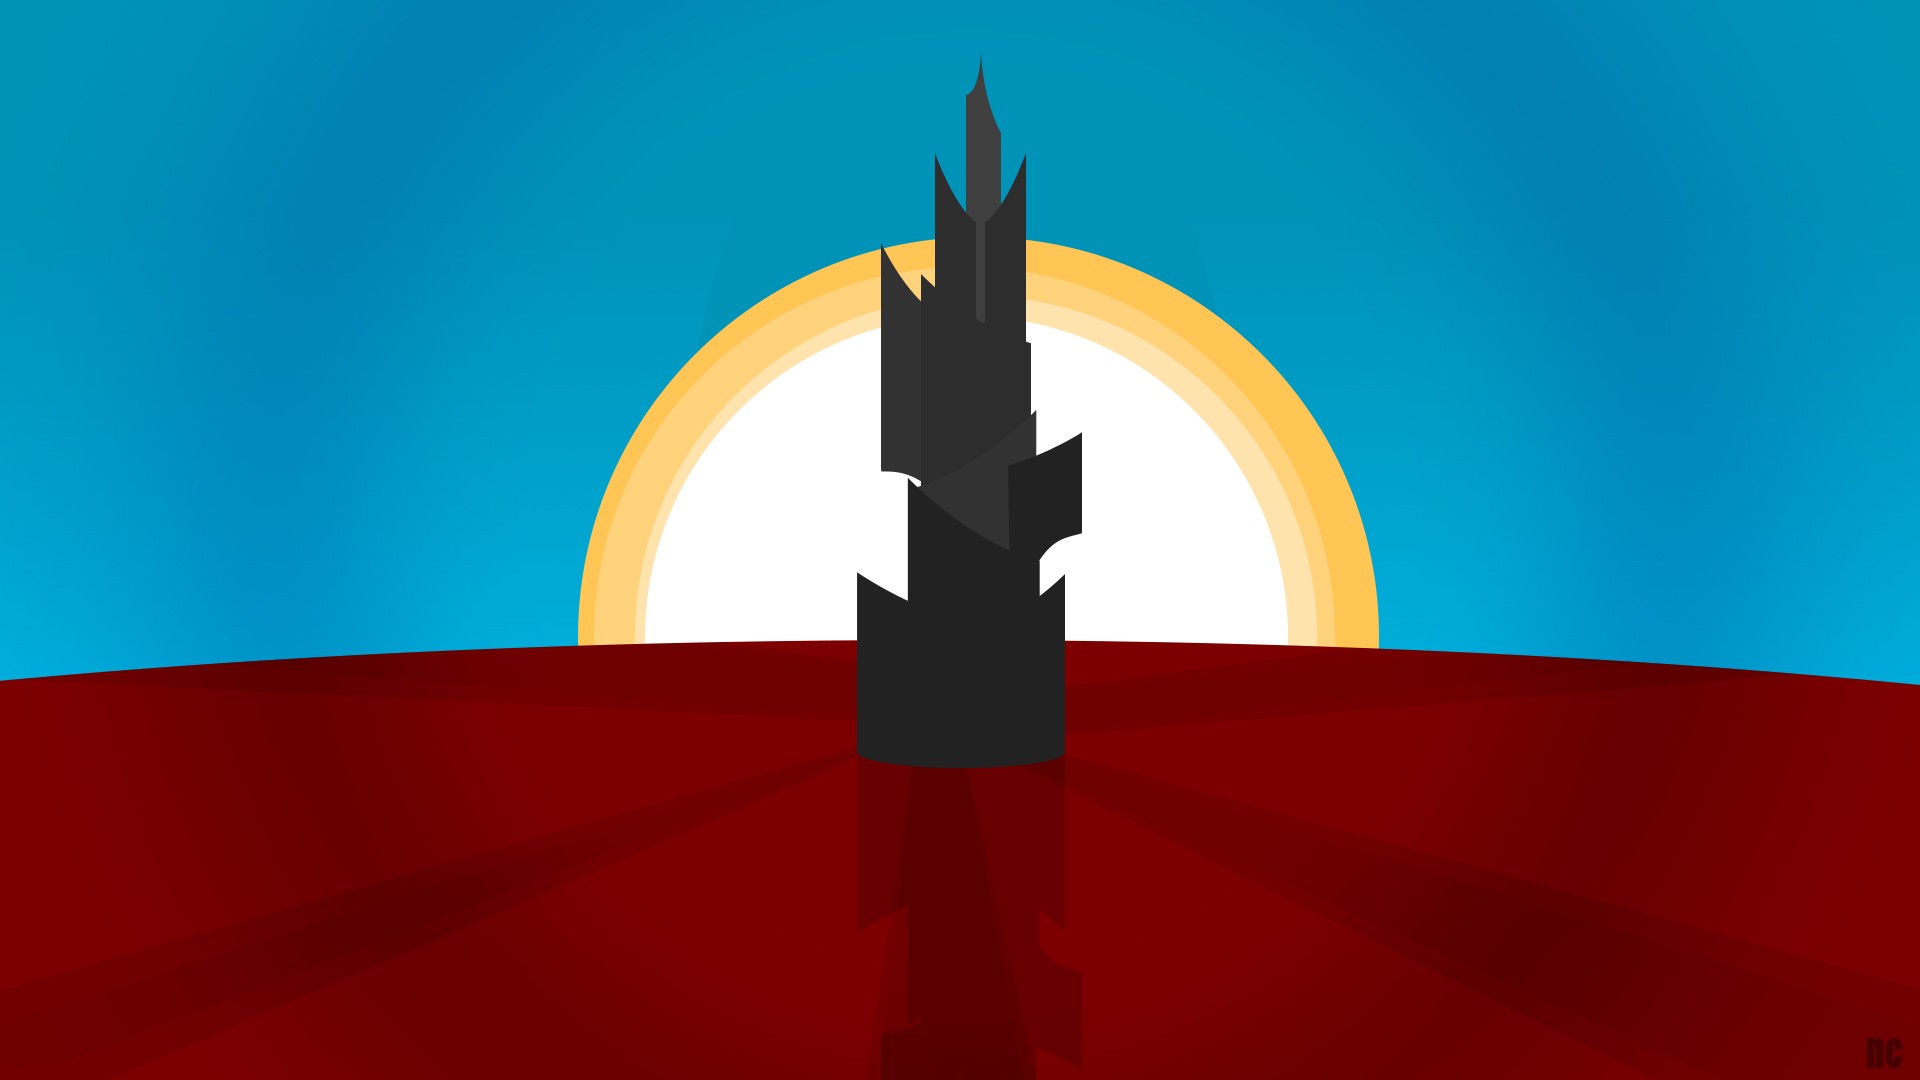 Minimalist desktop wallpaper I made, the Dark Tower. : TheDarkTower